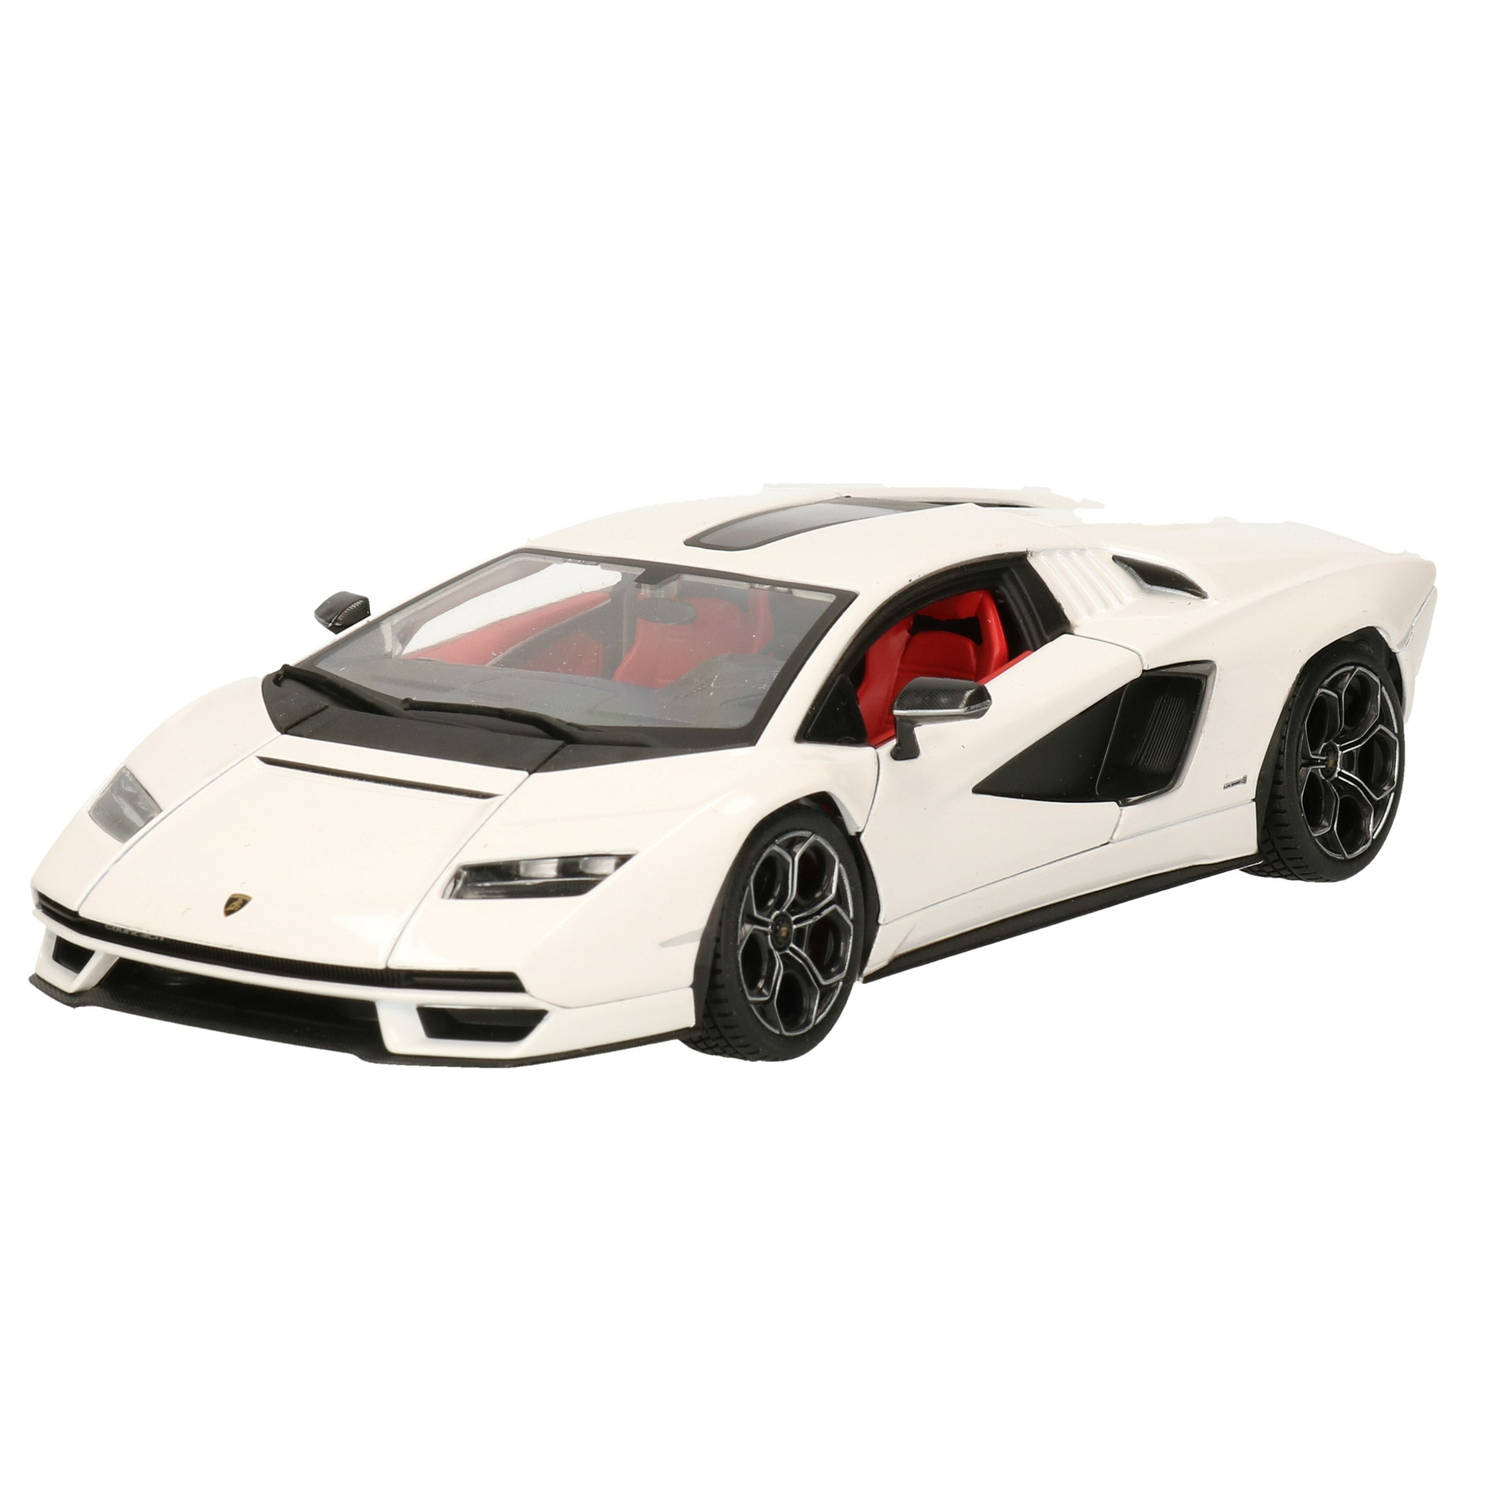 Modelauto-speelgoedauto Lamborghini Countach Schaal 1:24-20 X 8 X 5 Cm Speelgoed Auto's